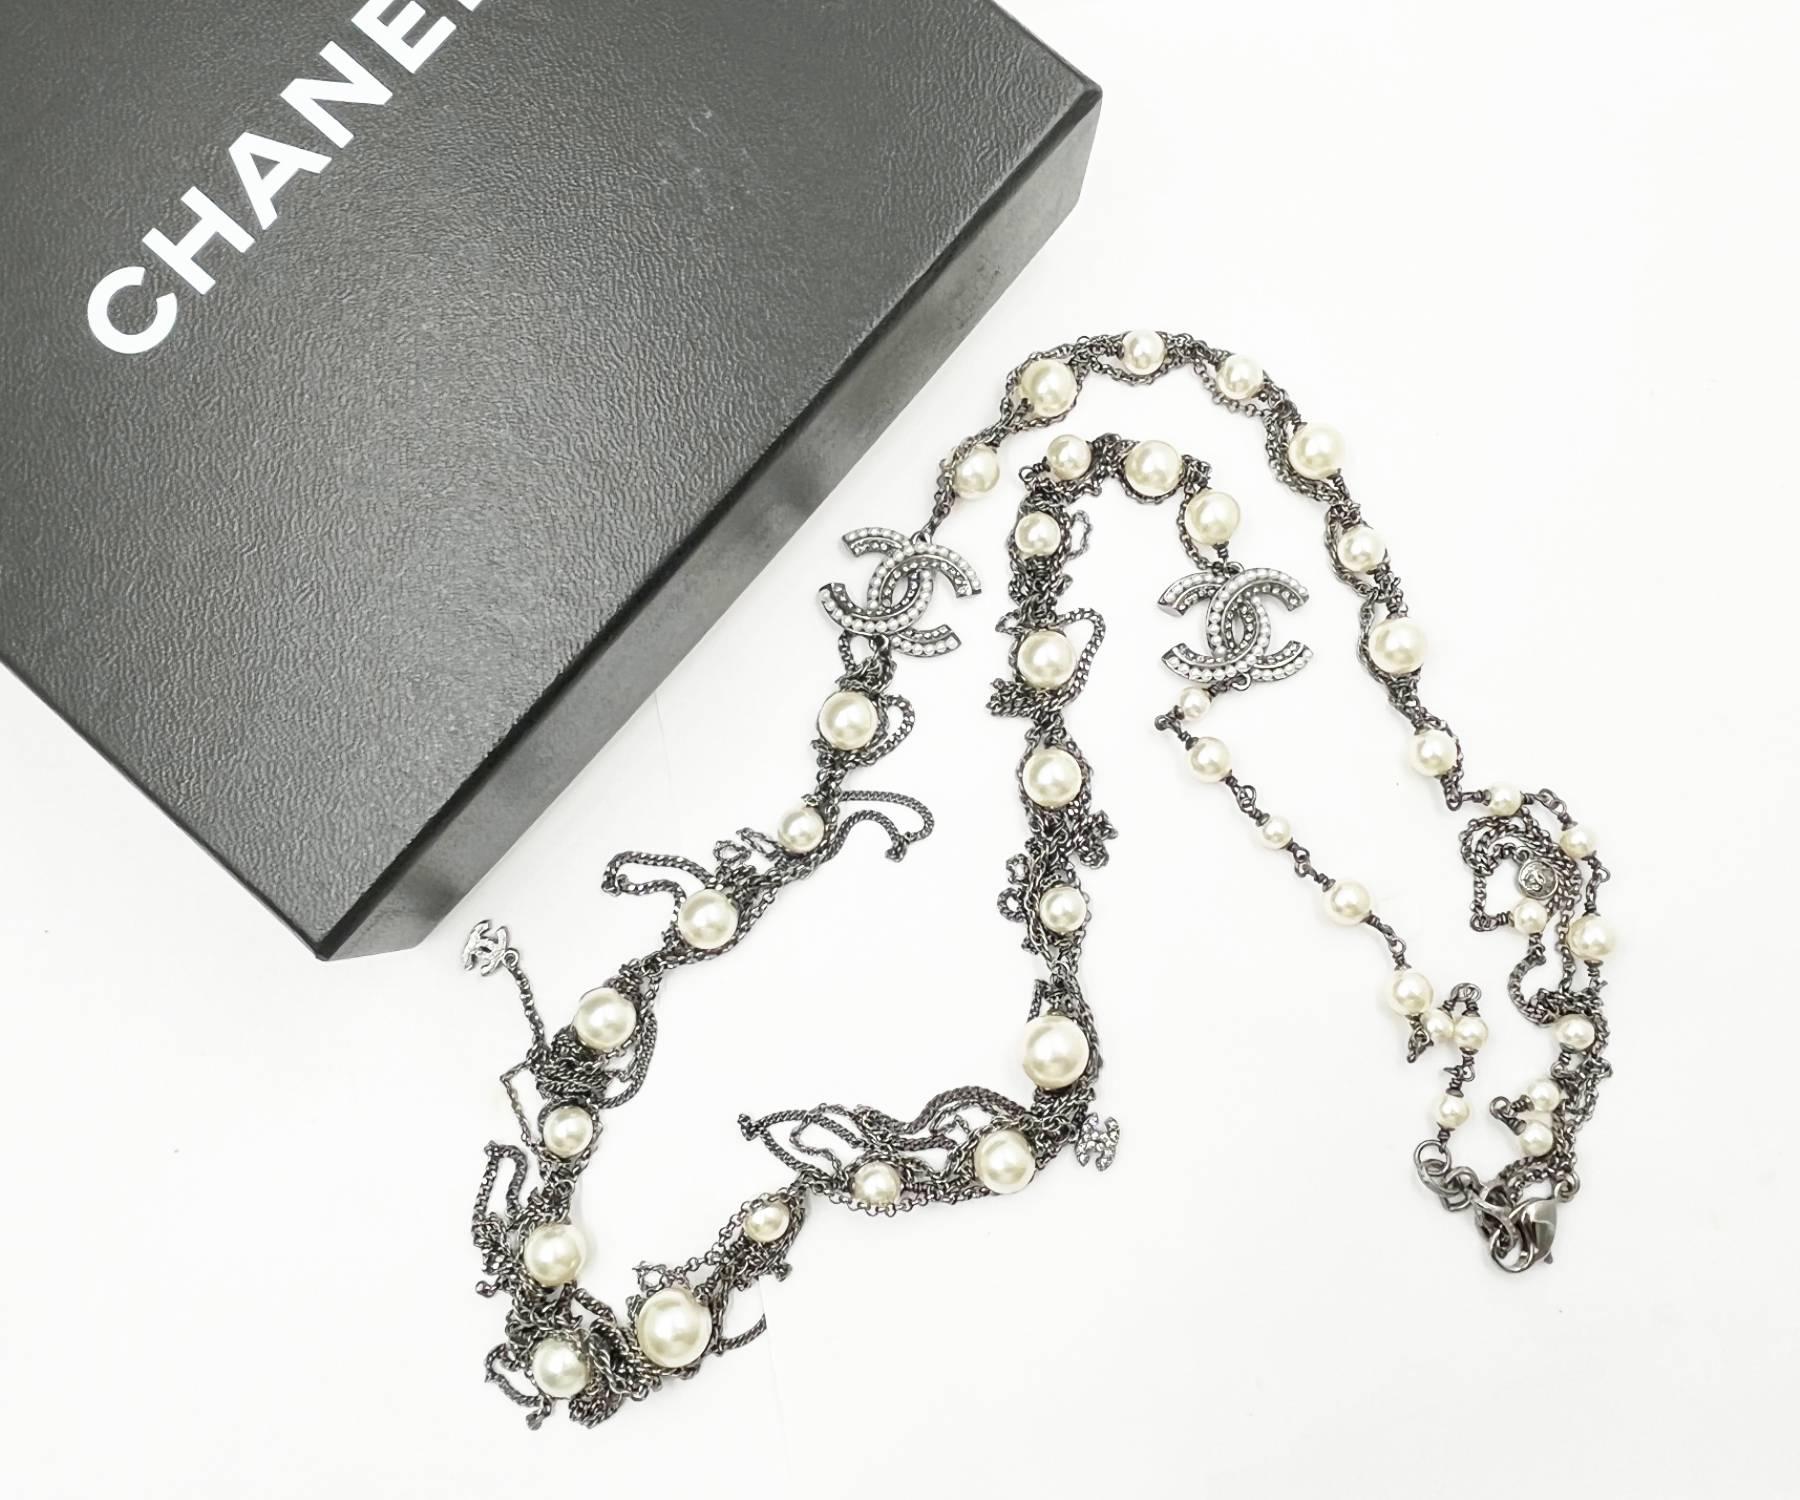 Chanel Gunmetal Perle baumelnden Kette lange Halskette

*Markiert 10
*Hergestellt in Frankreich
*Kommt mit dem Originalkarton

-Ungefähr 37″ lang
-Sehr schickes Design, als einzelne Kette oder als Wickelkette zu tragen
-Pristine